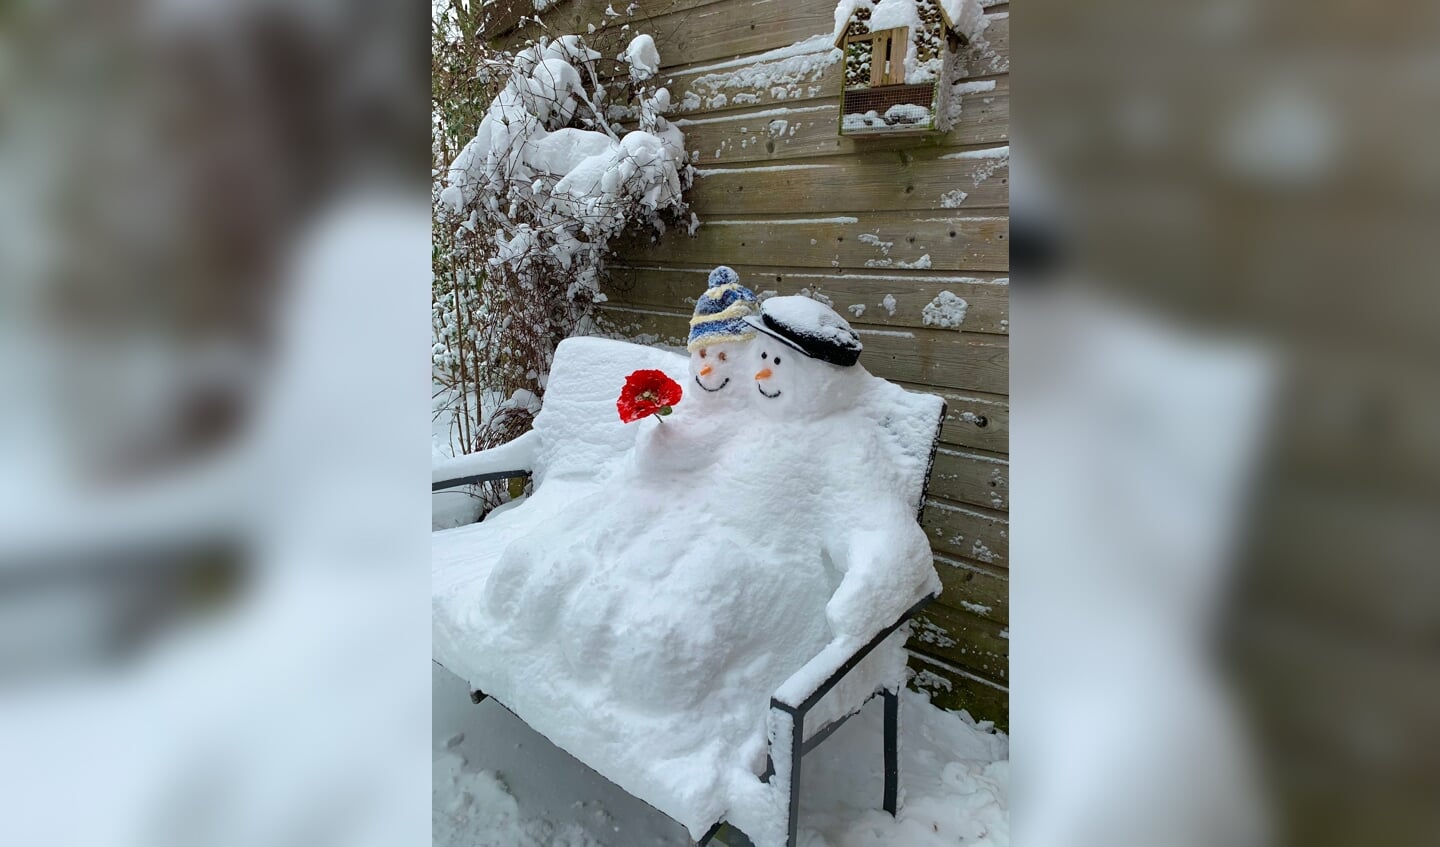 Hierbij mijn foto van twee sneeuwpoppen op een bankje die ik afgelopen week gemaakt heb.